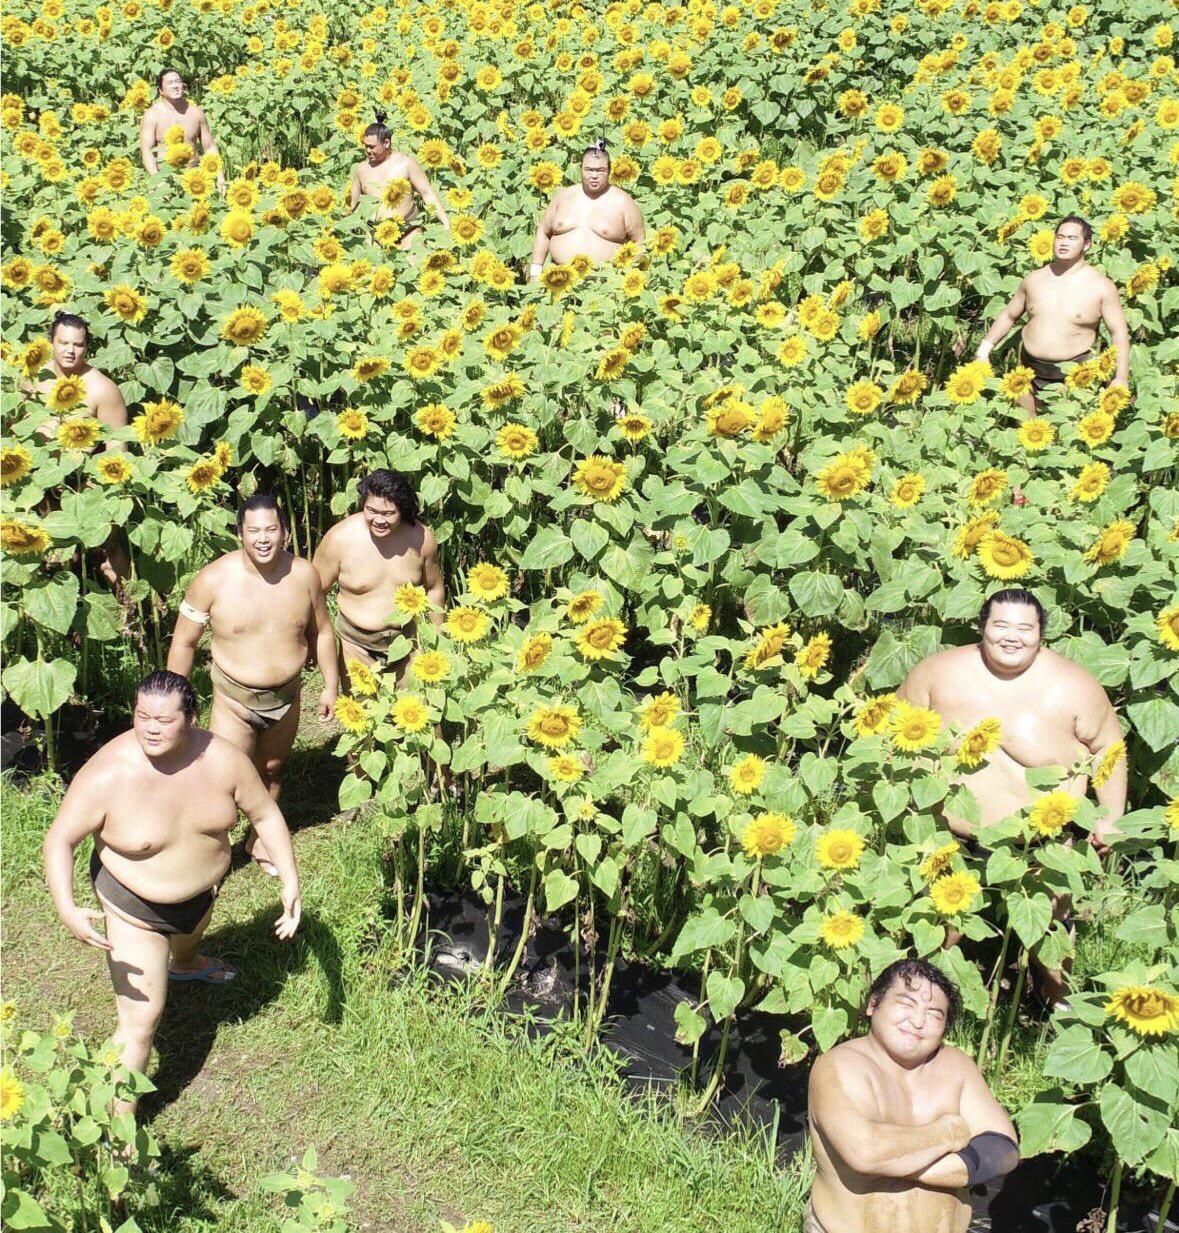 A buffet of sumo wrestlers in a sunflower field...